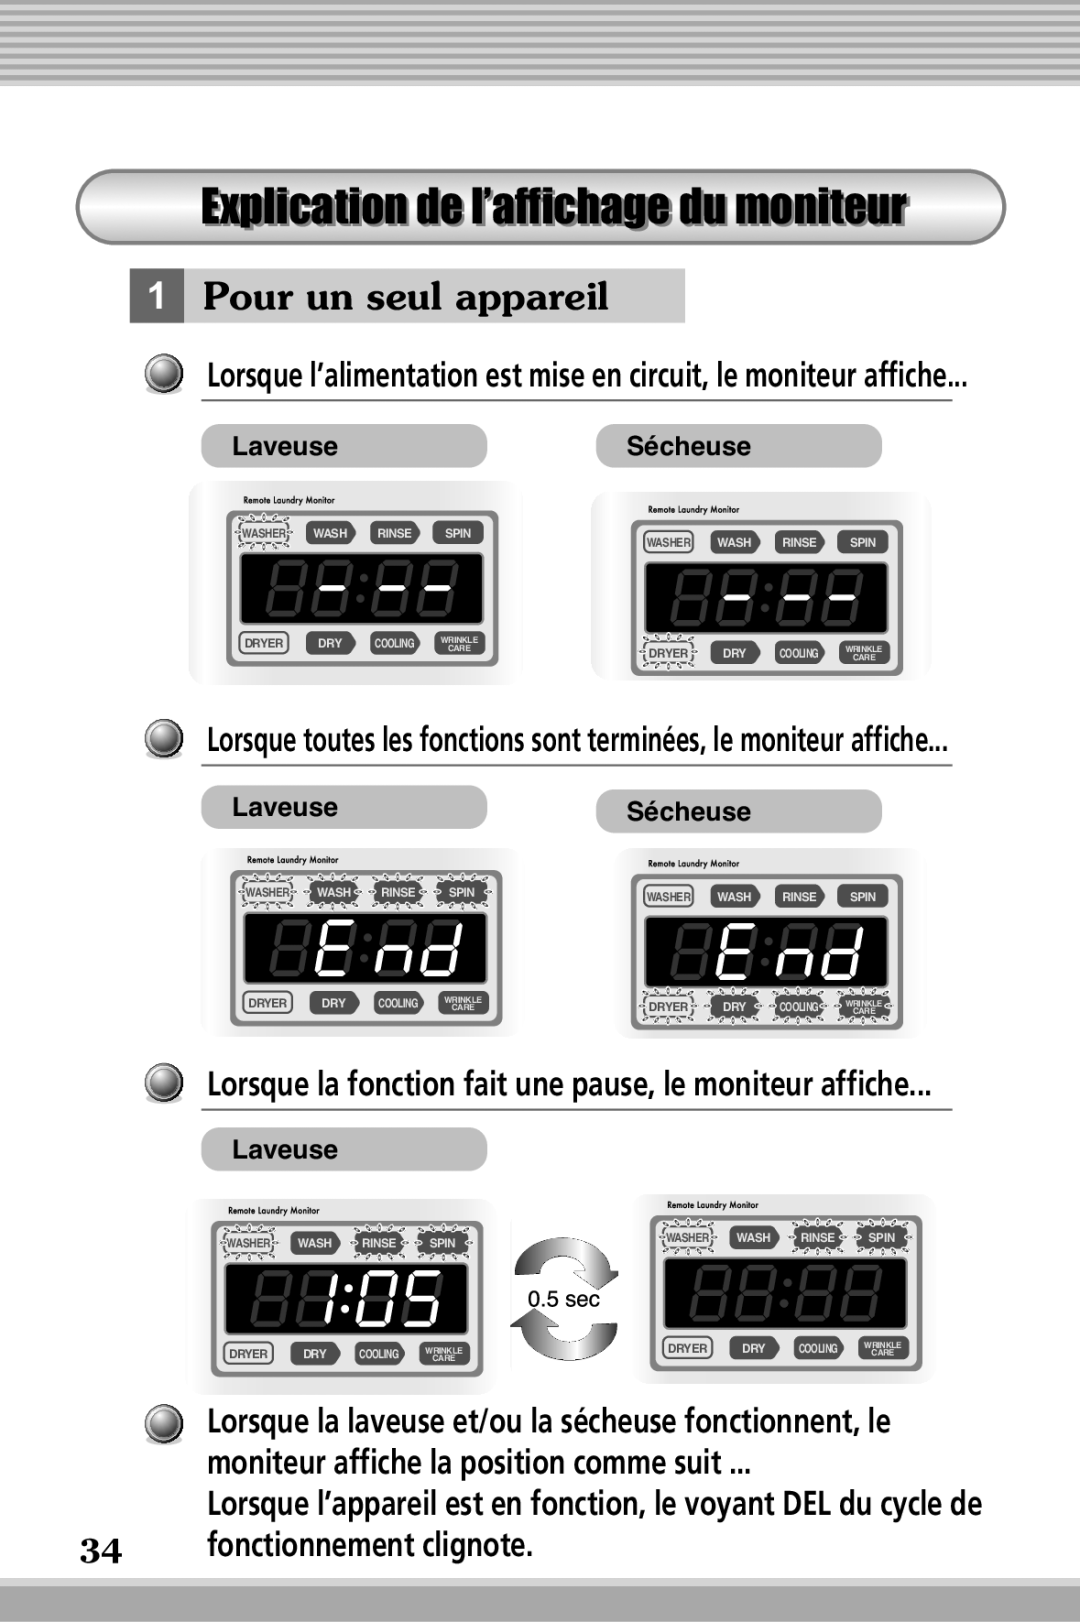 LG Electronics RLM20K, RLM10 owner manual Explicationdel’affichage’ dumoniteur, Pour un seul appareil, LaveuseSécheuse 